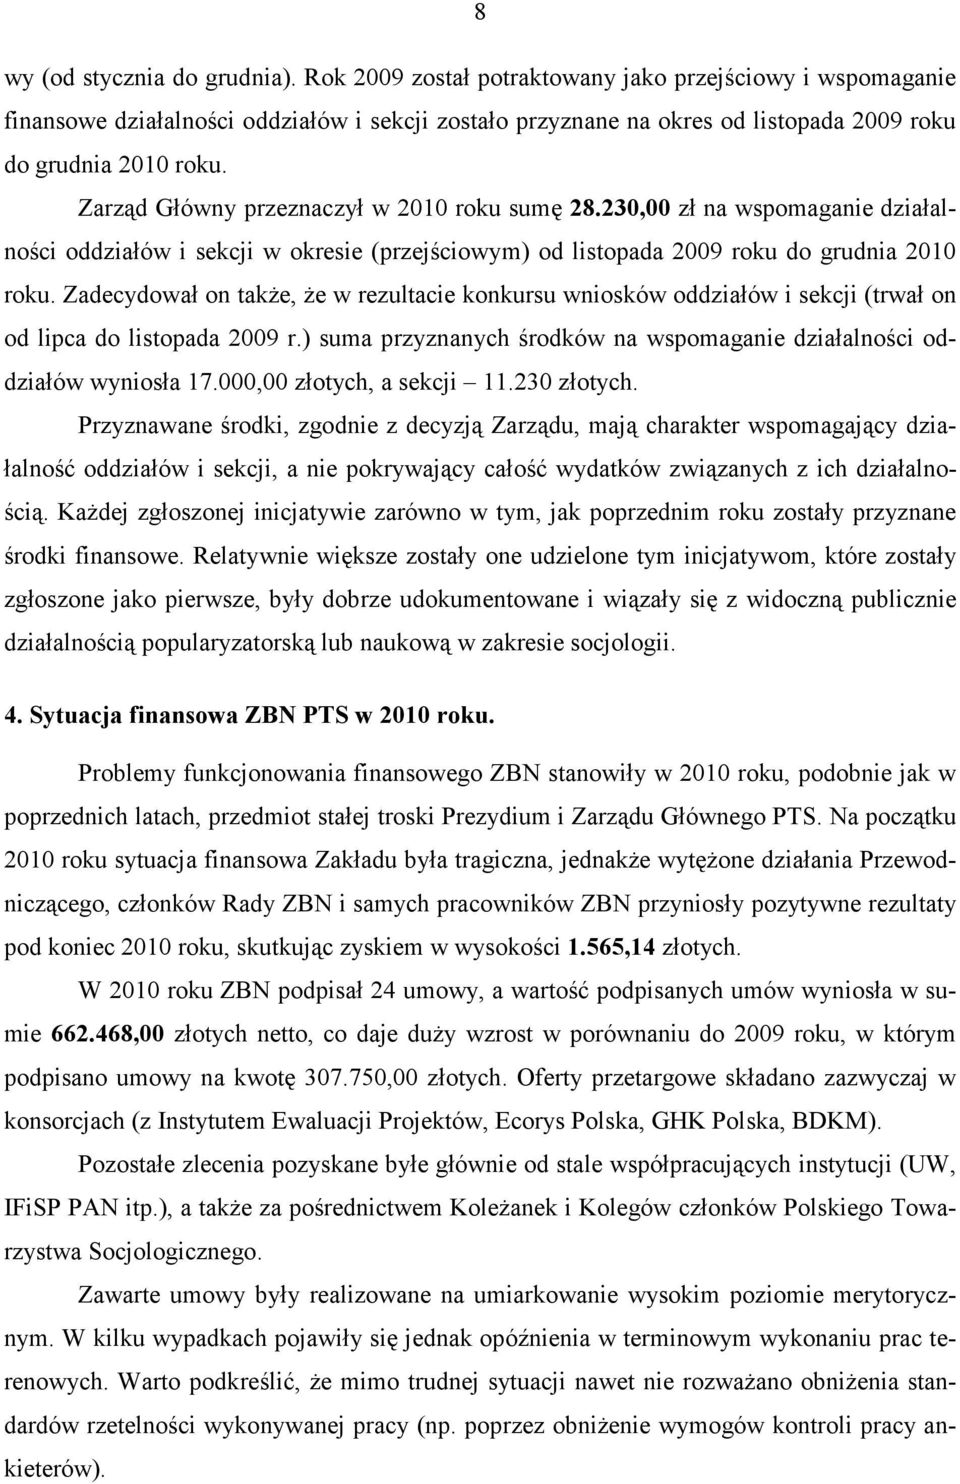 Zarząd Główny przeznaczył w 2010 roku sumę 28.230,00 zł na wspomaganie działalności oddziałów i sekcji w okresie (przejściowym) od listopada 2009 roku do grudnia 2010 roku.